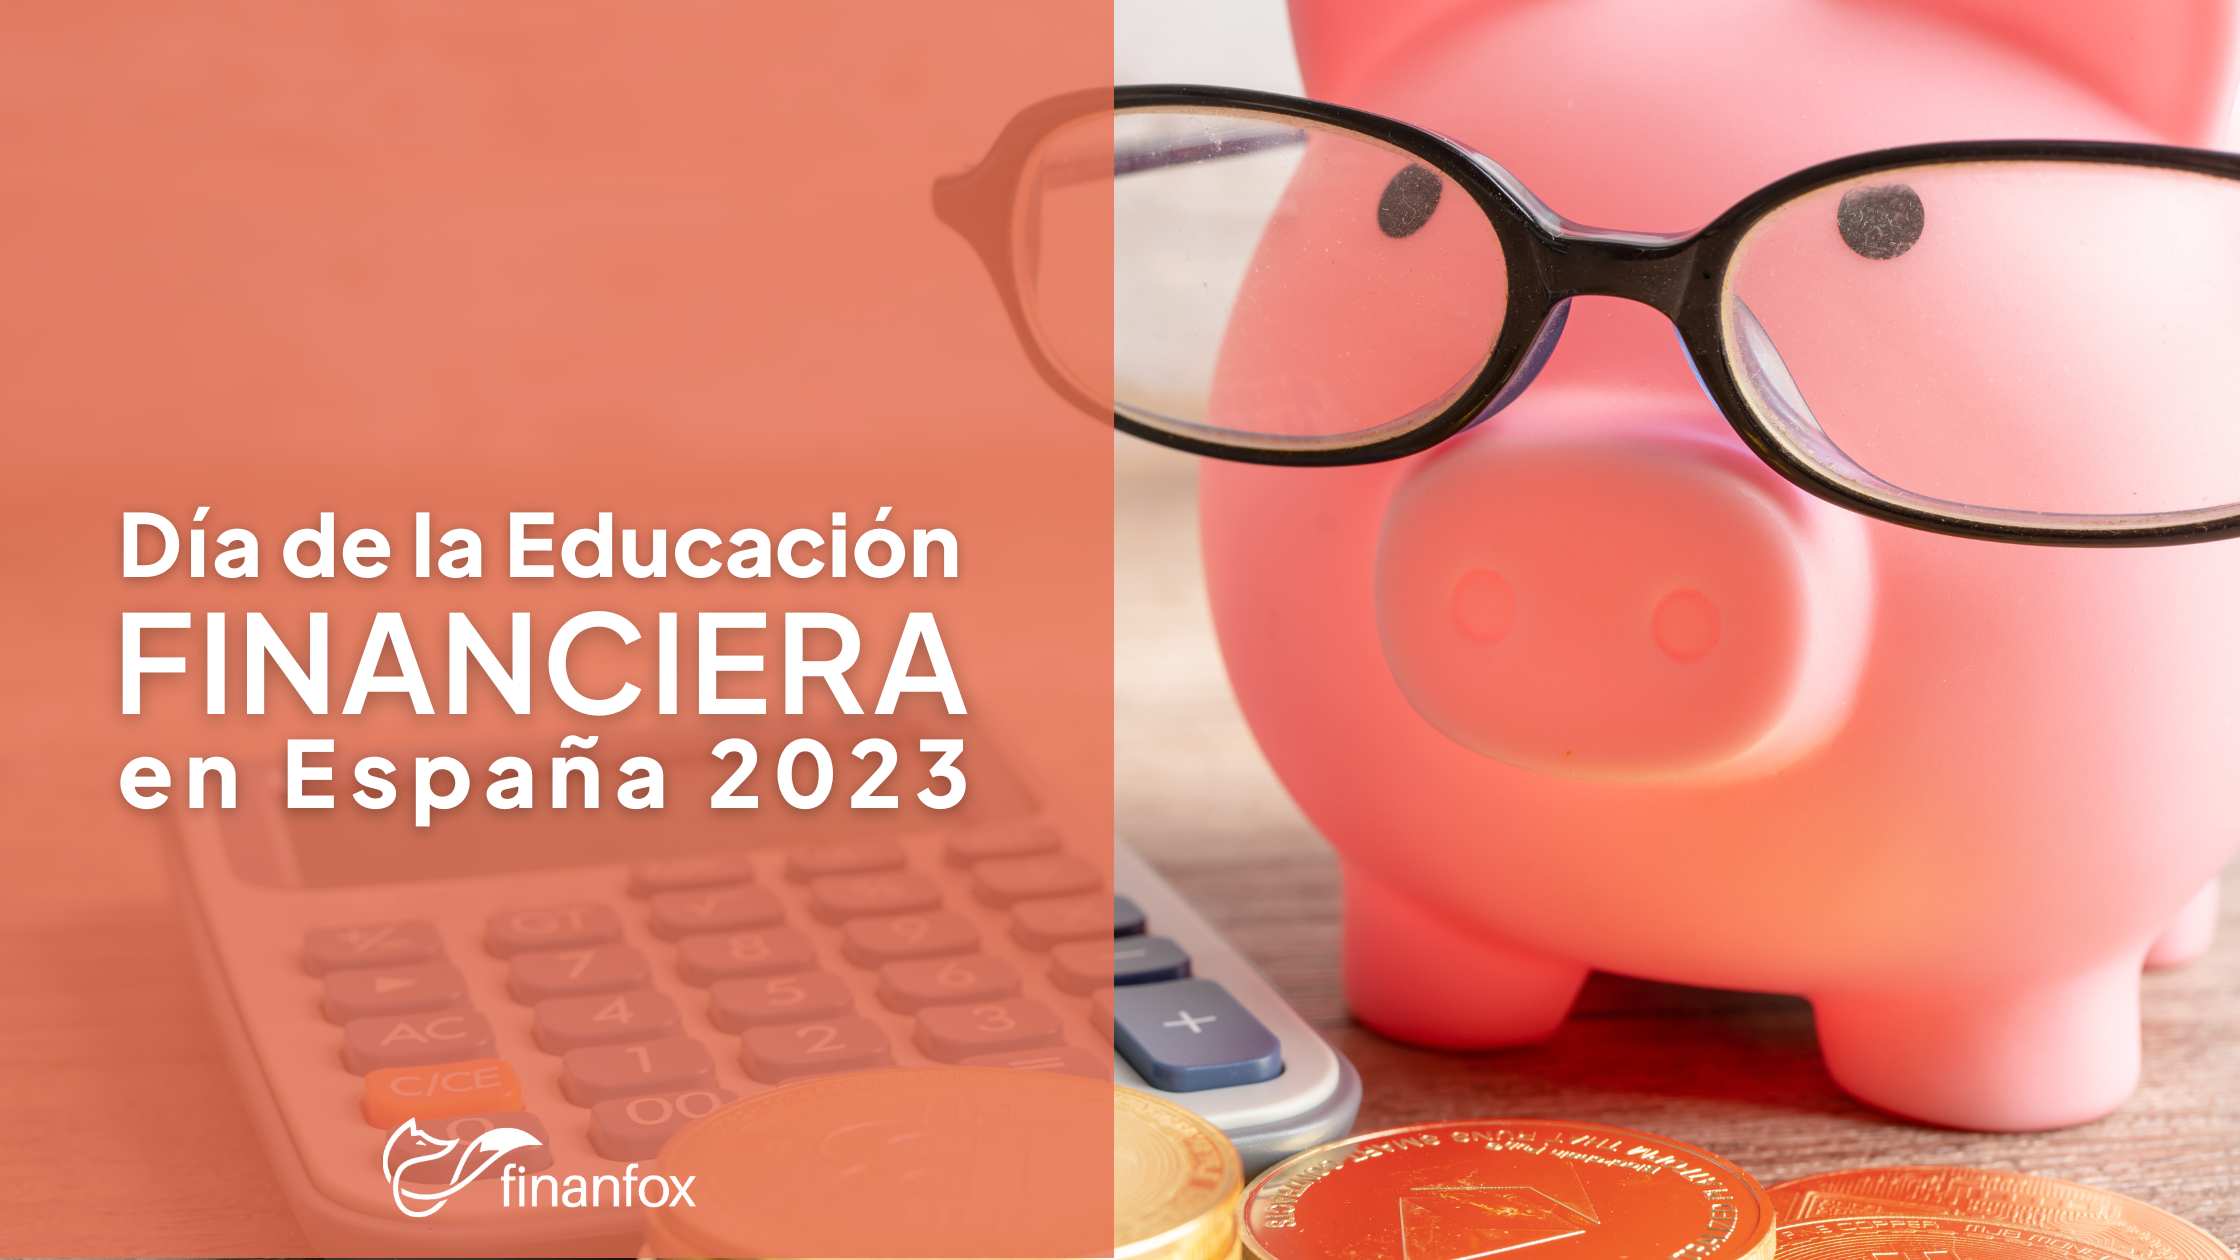 Día de la Educación Financiera 2023: ¿Qué nota saca España?